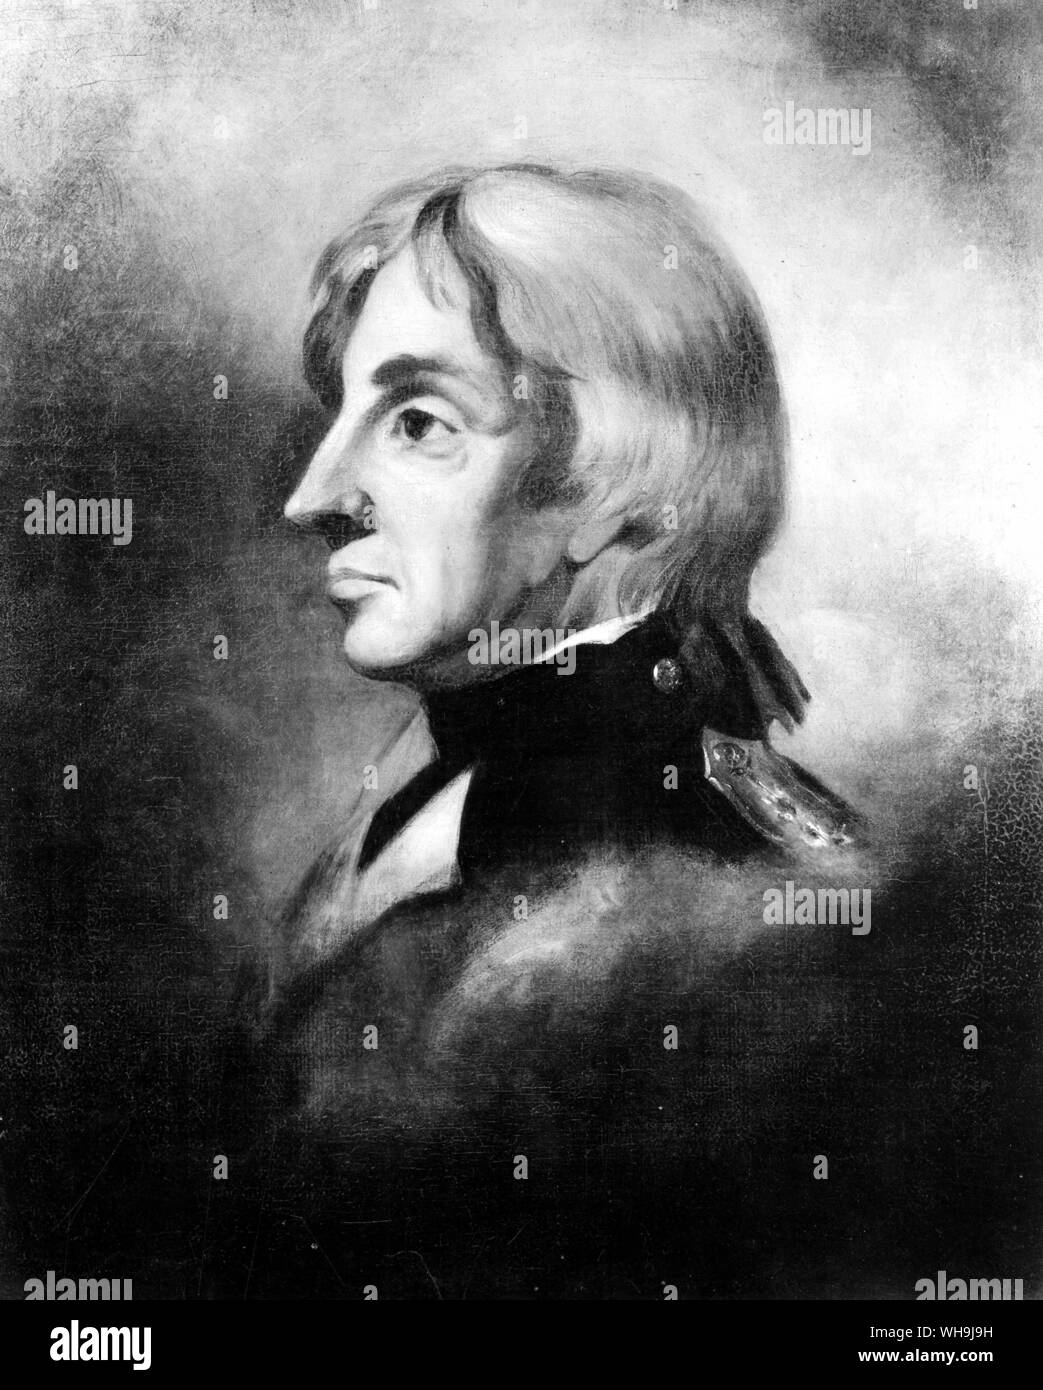 Admiral Lord Horatio Nelson (1758-1805). Er führen, England in der Schlacht von Trafalgar im Jahre 1805, in dem er sein Leben verlor. Stockfoto